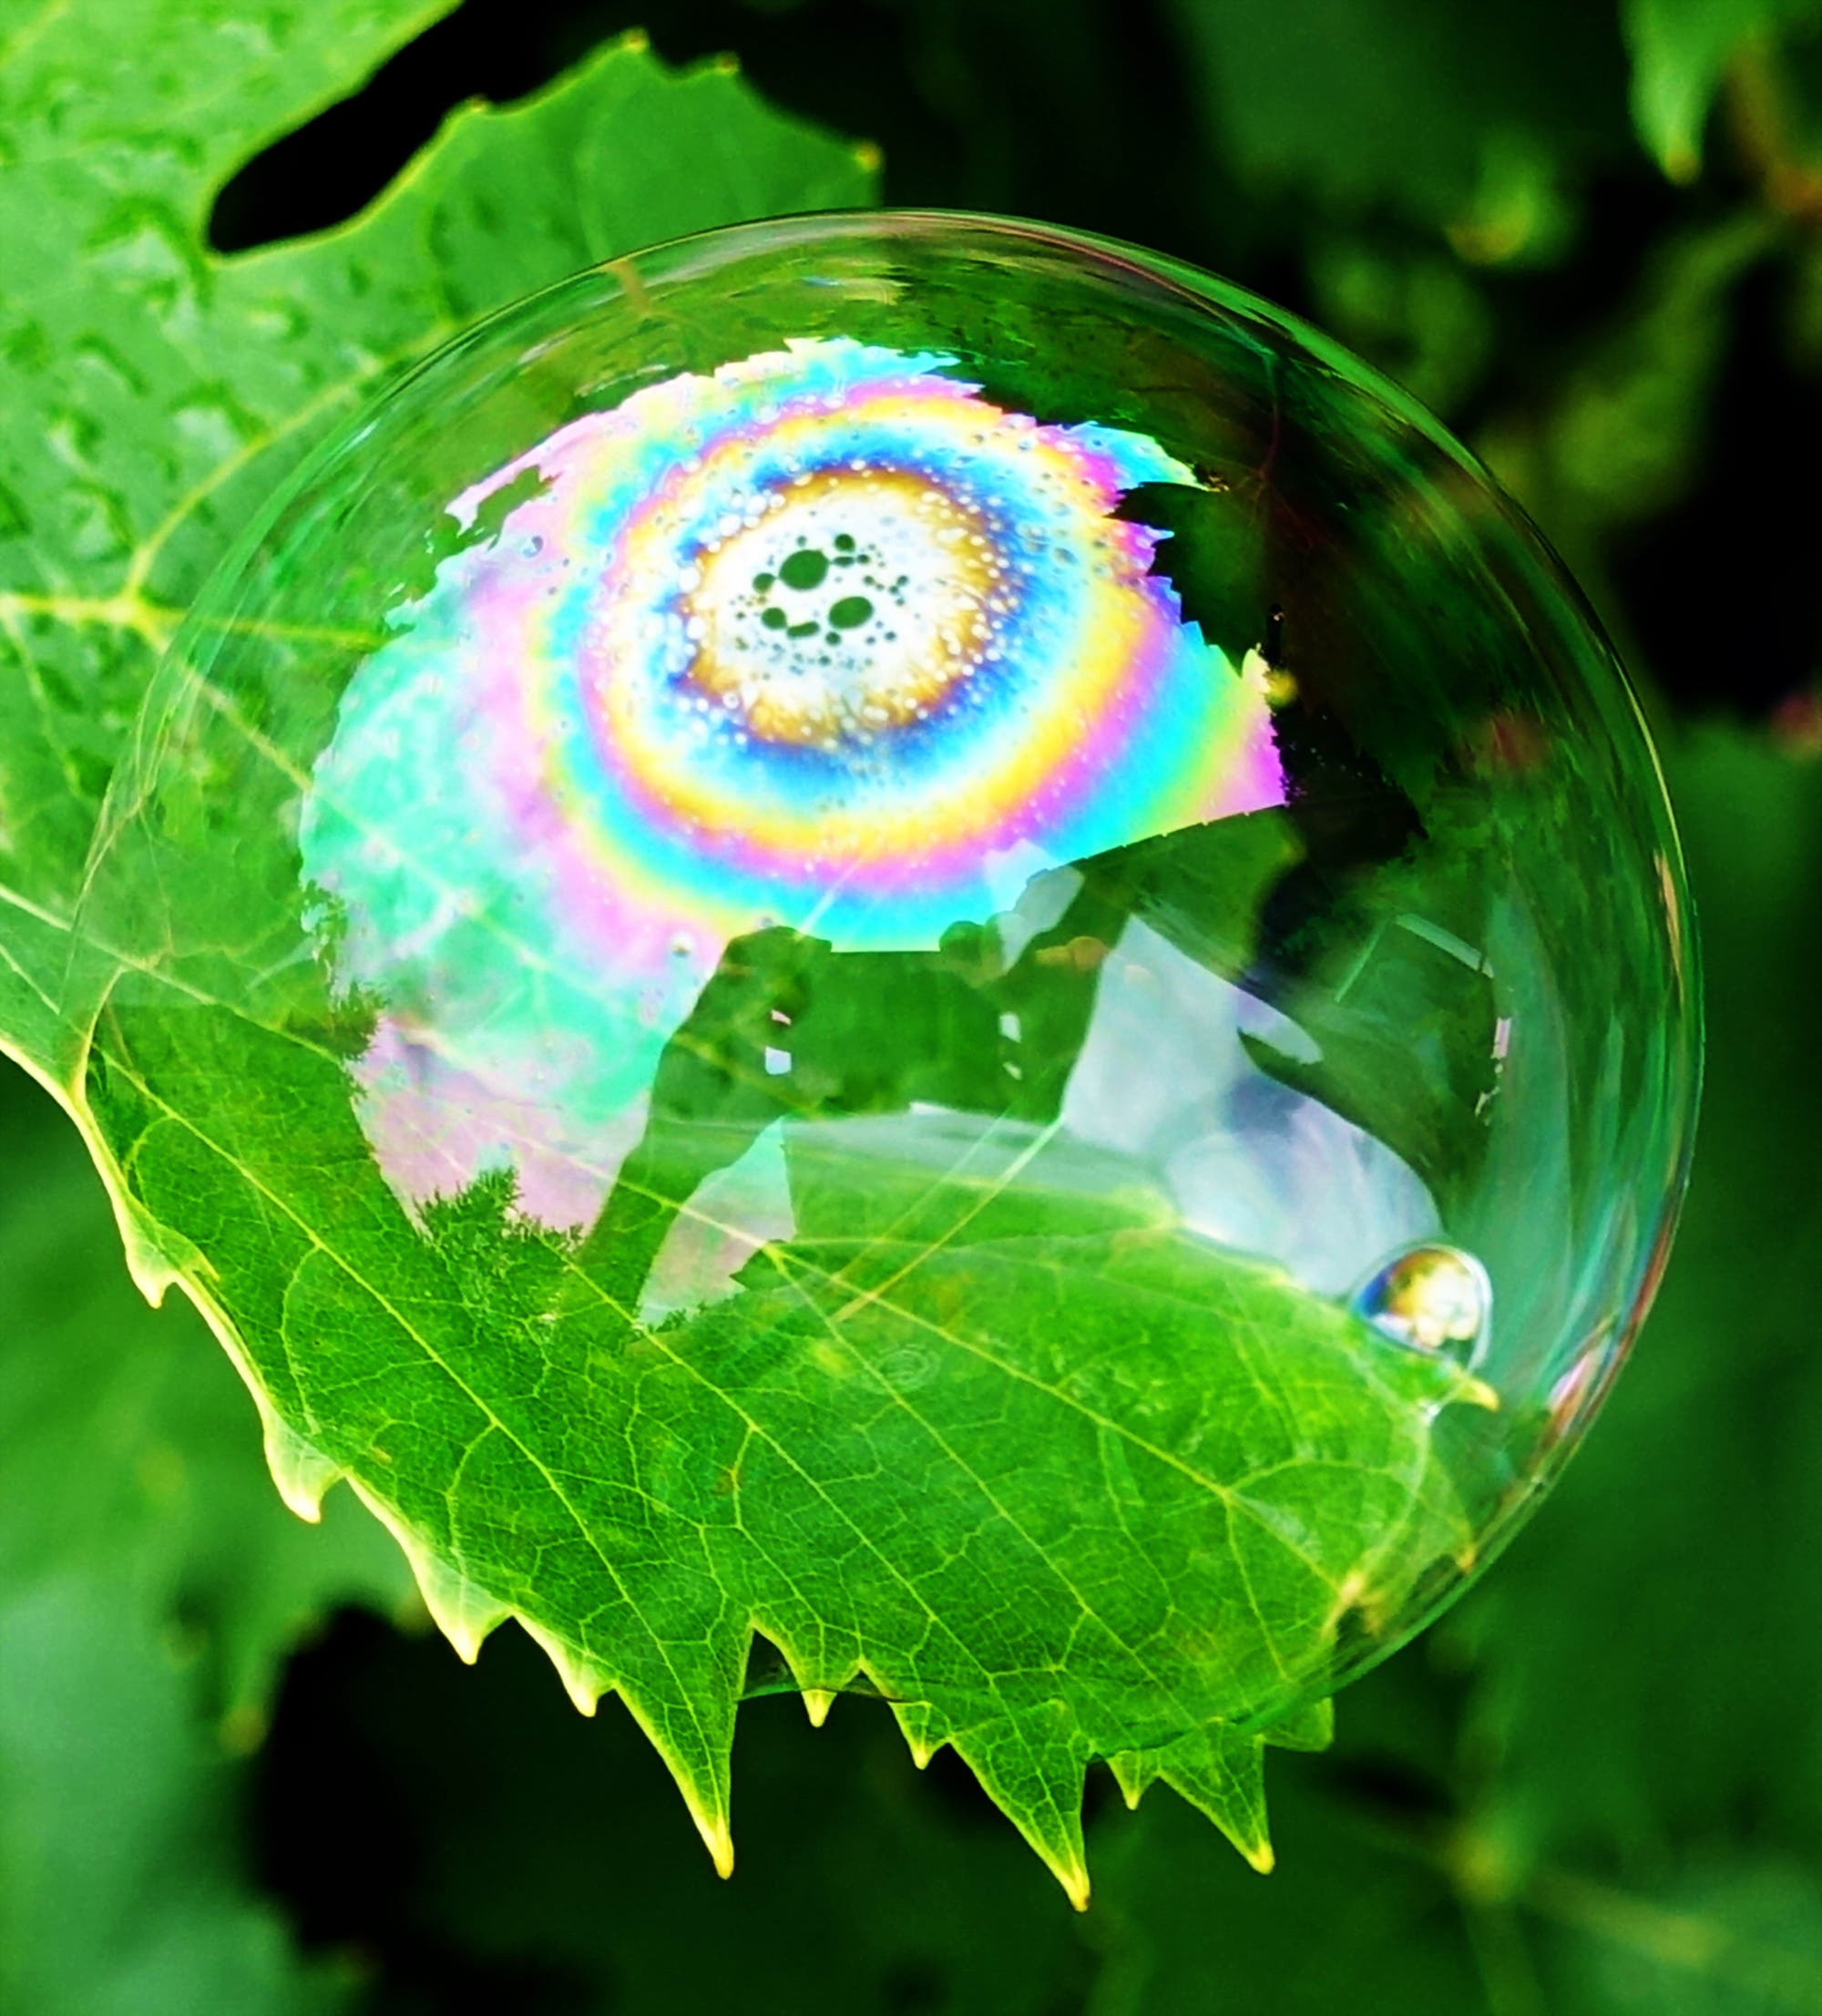 Eine Seifenblase auf einem Blatt zeigt kreisförmige Farbverläufe